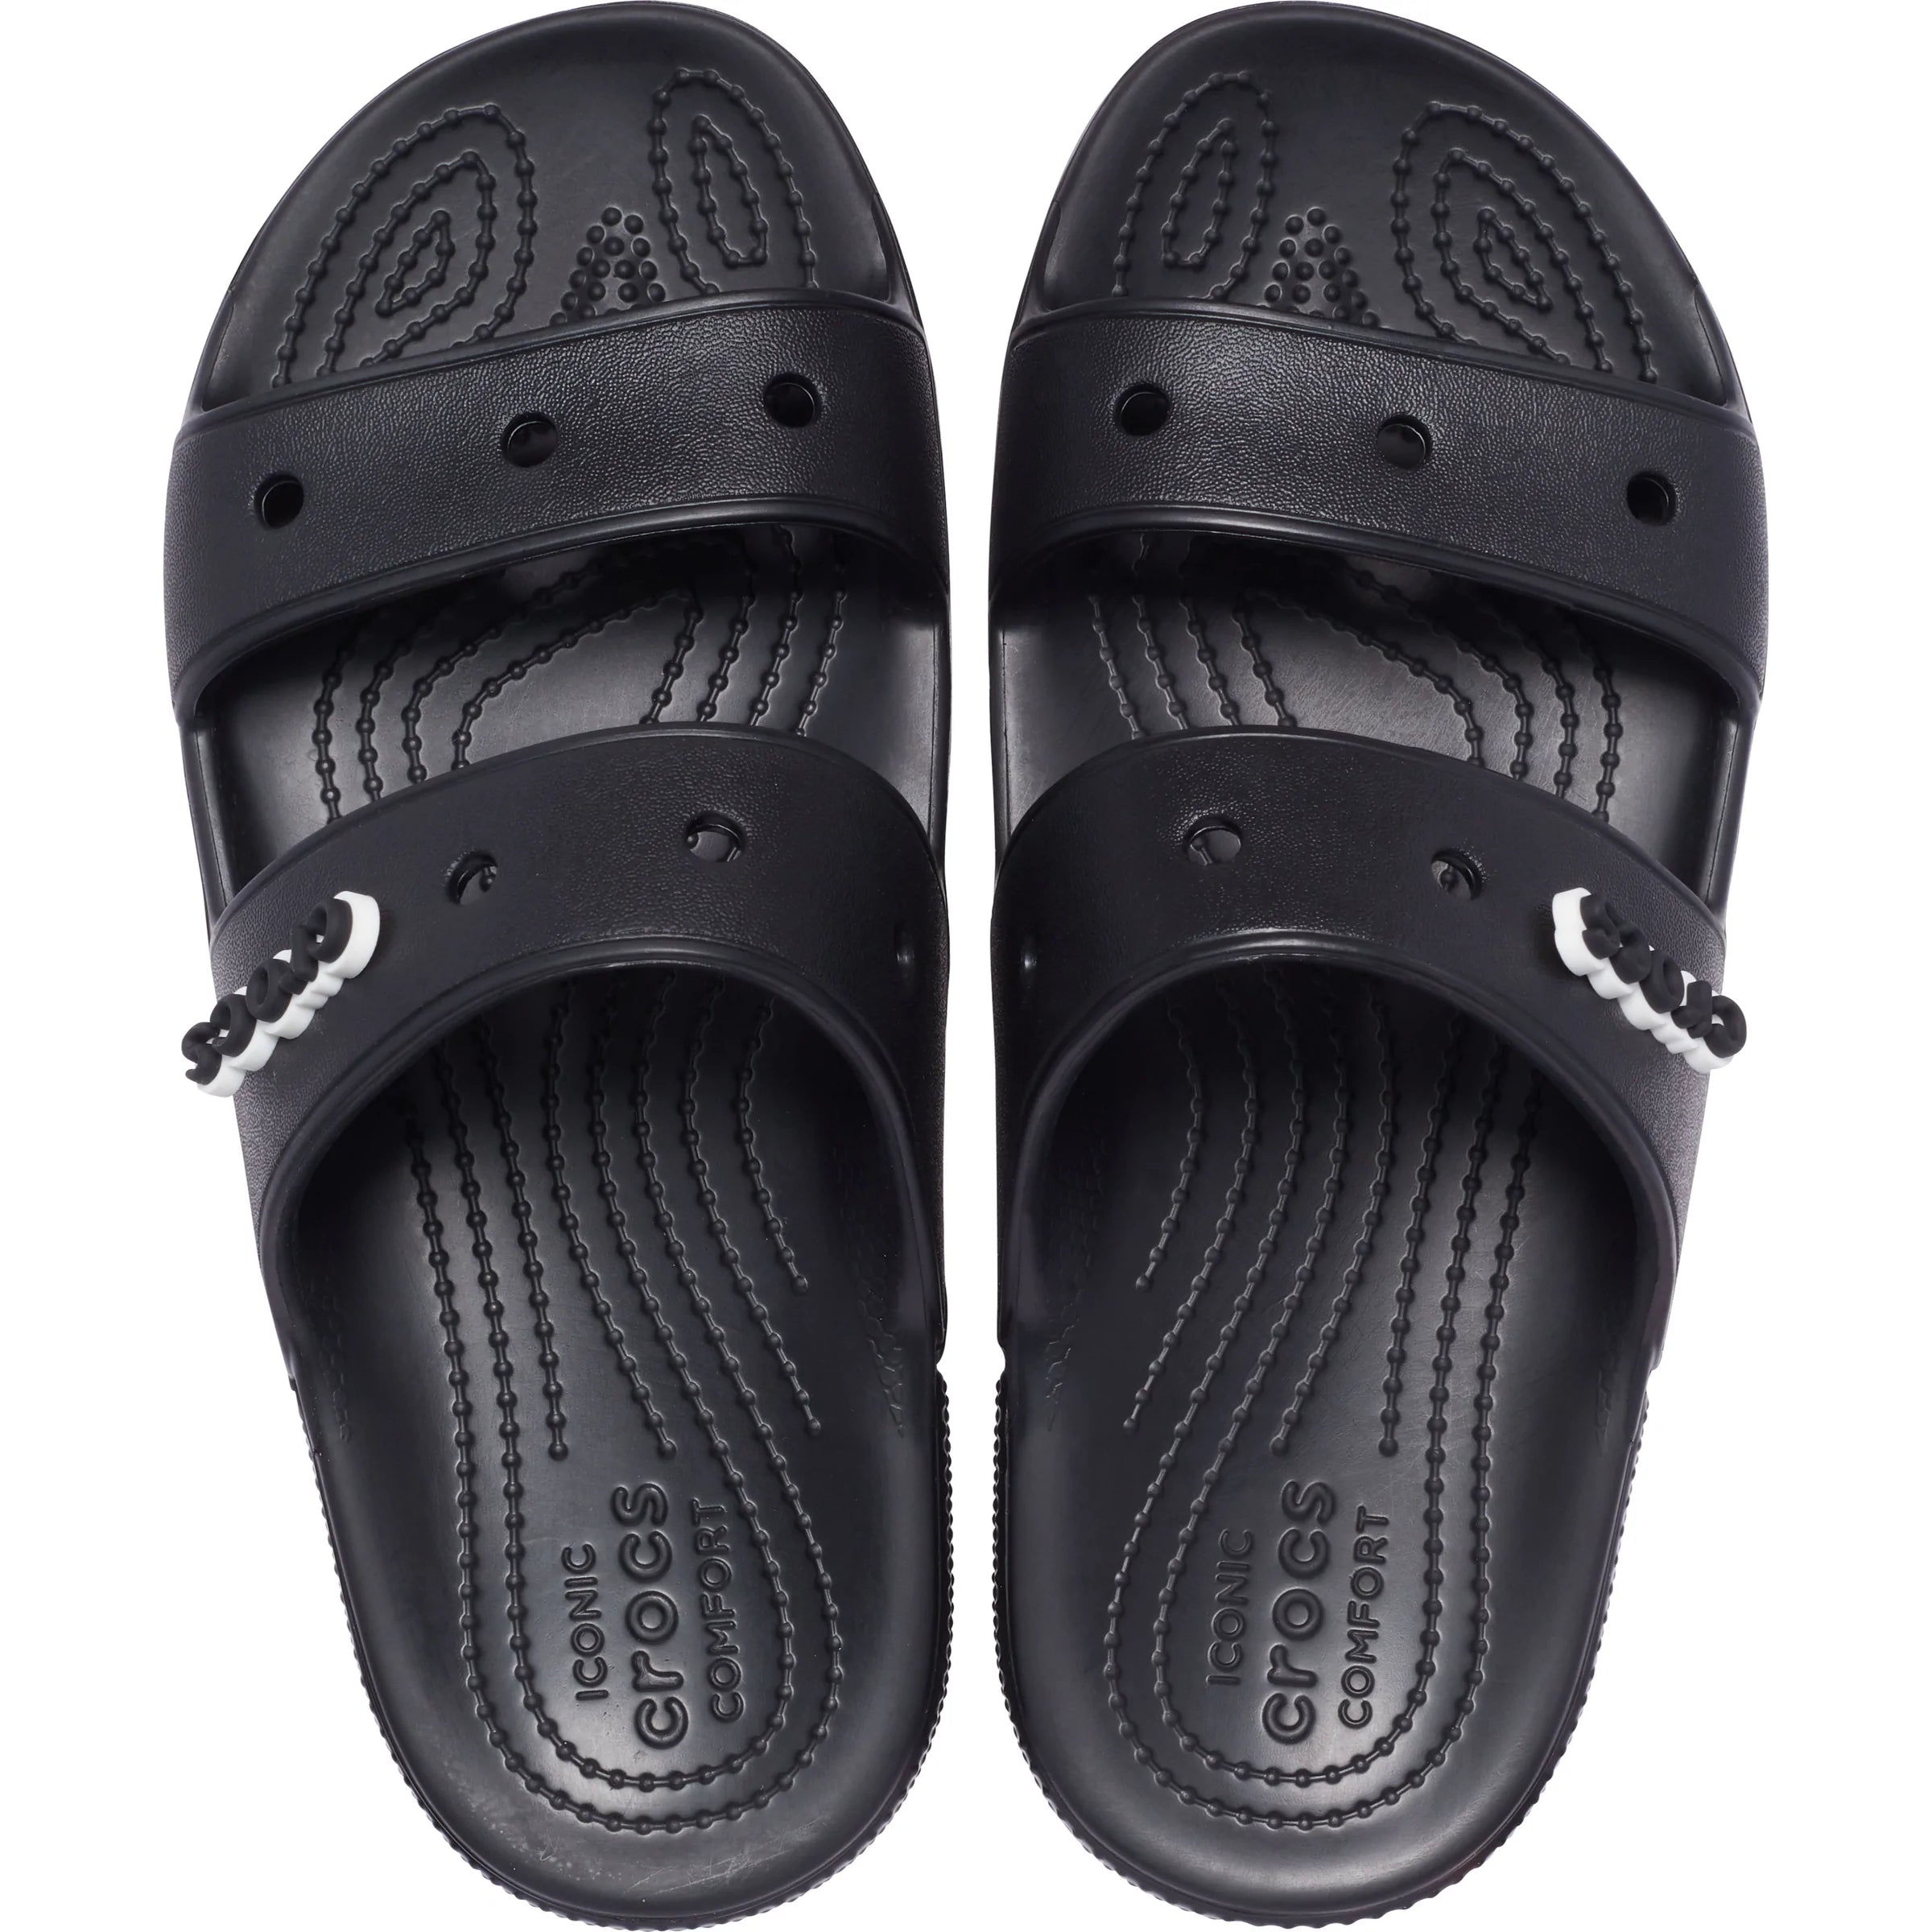 Classic Crocs Sandal - shoe&me - Crocs - Slide - crocs, Sandals, Slides/Scuffs, Summer 22, Unisex